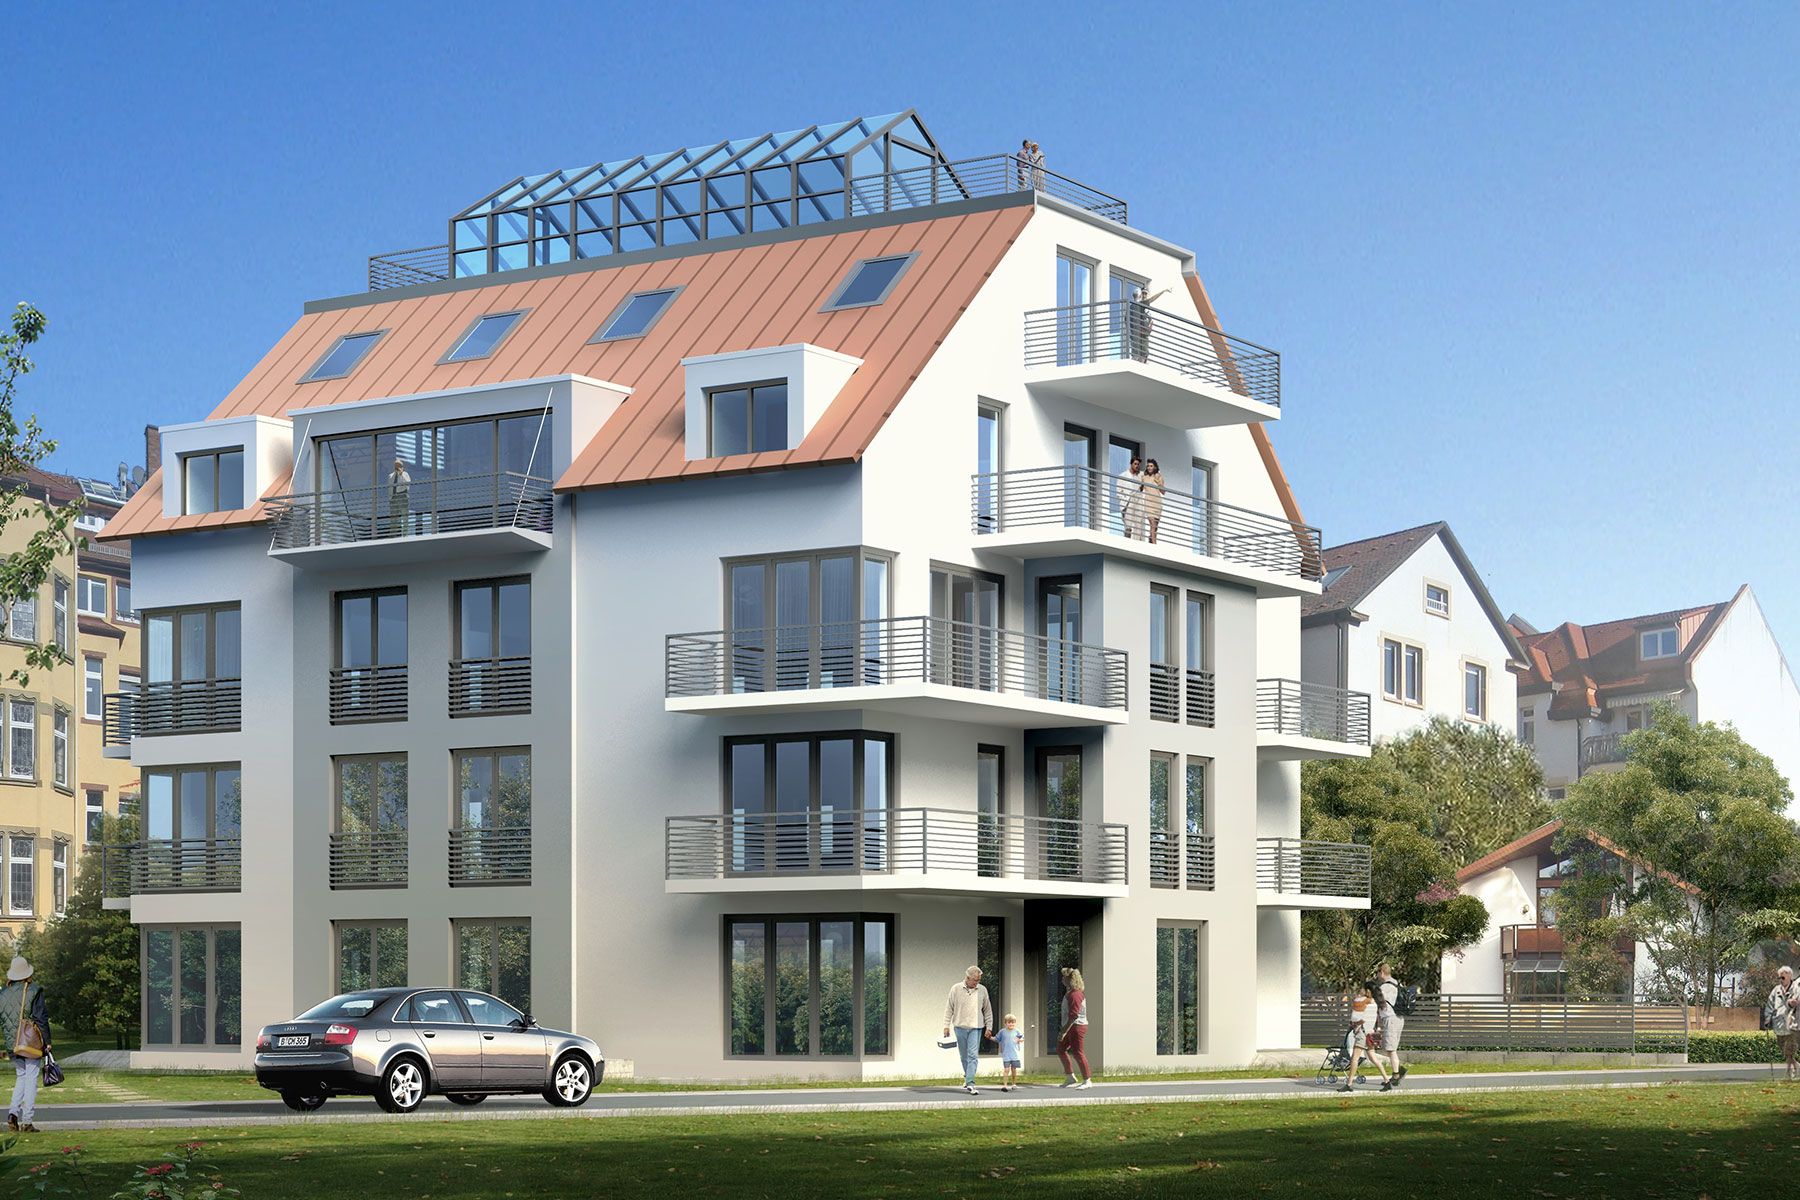 VERKAUFT – Ruhige 5-Zimmer Wohnung mit Balkon